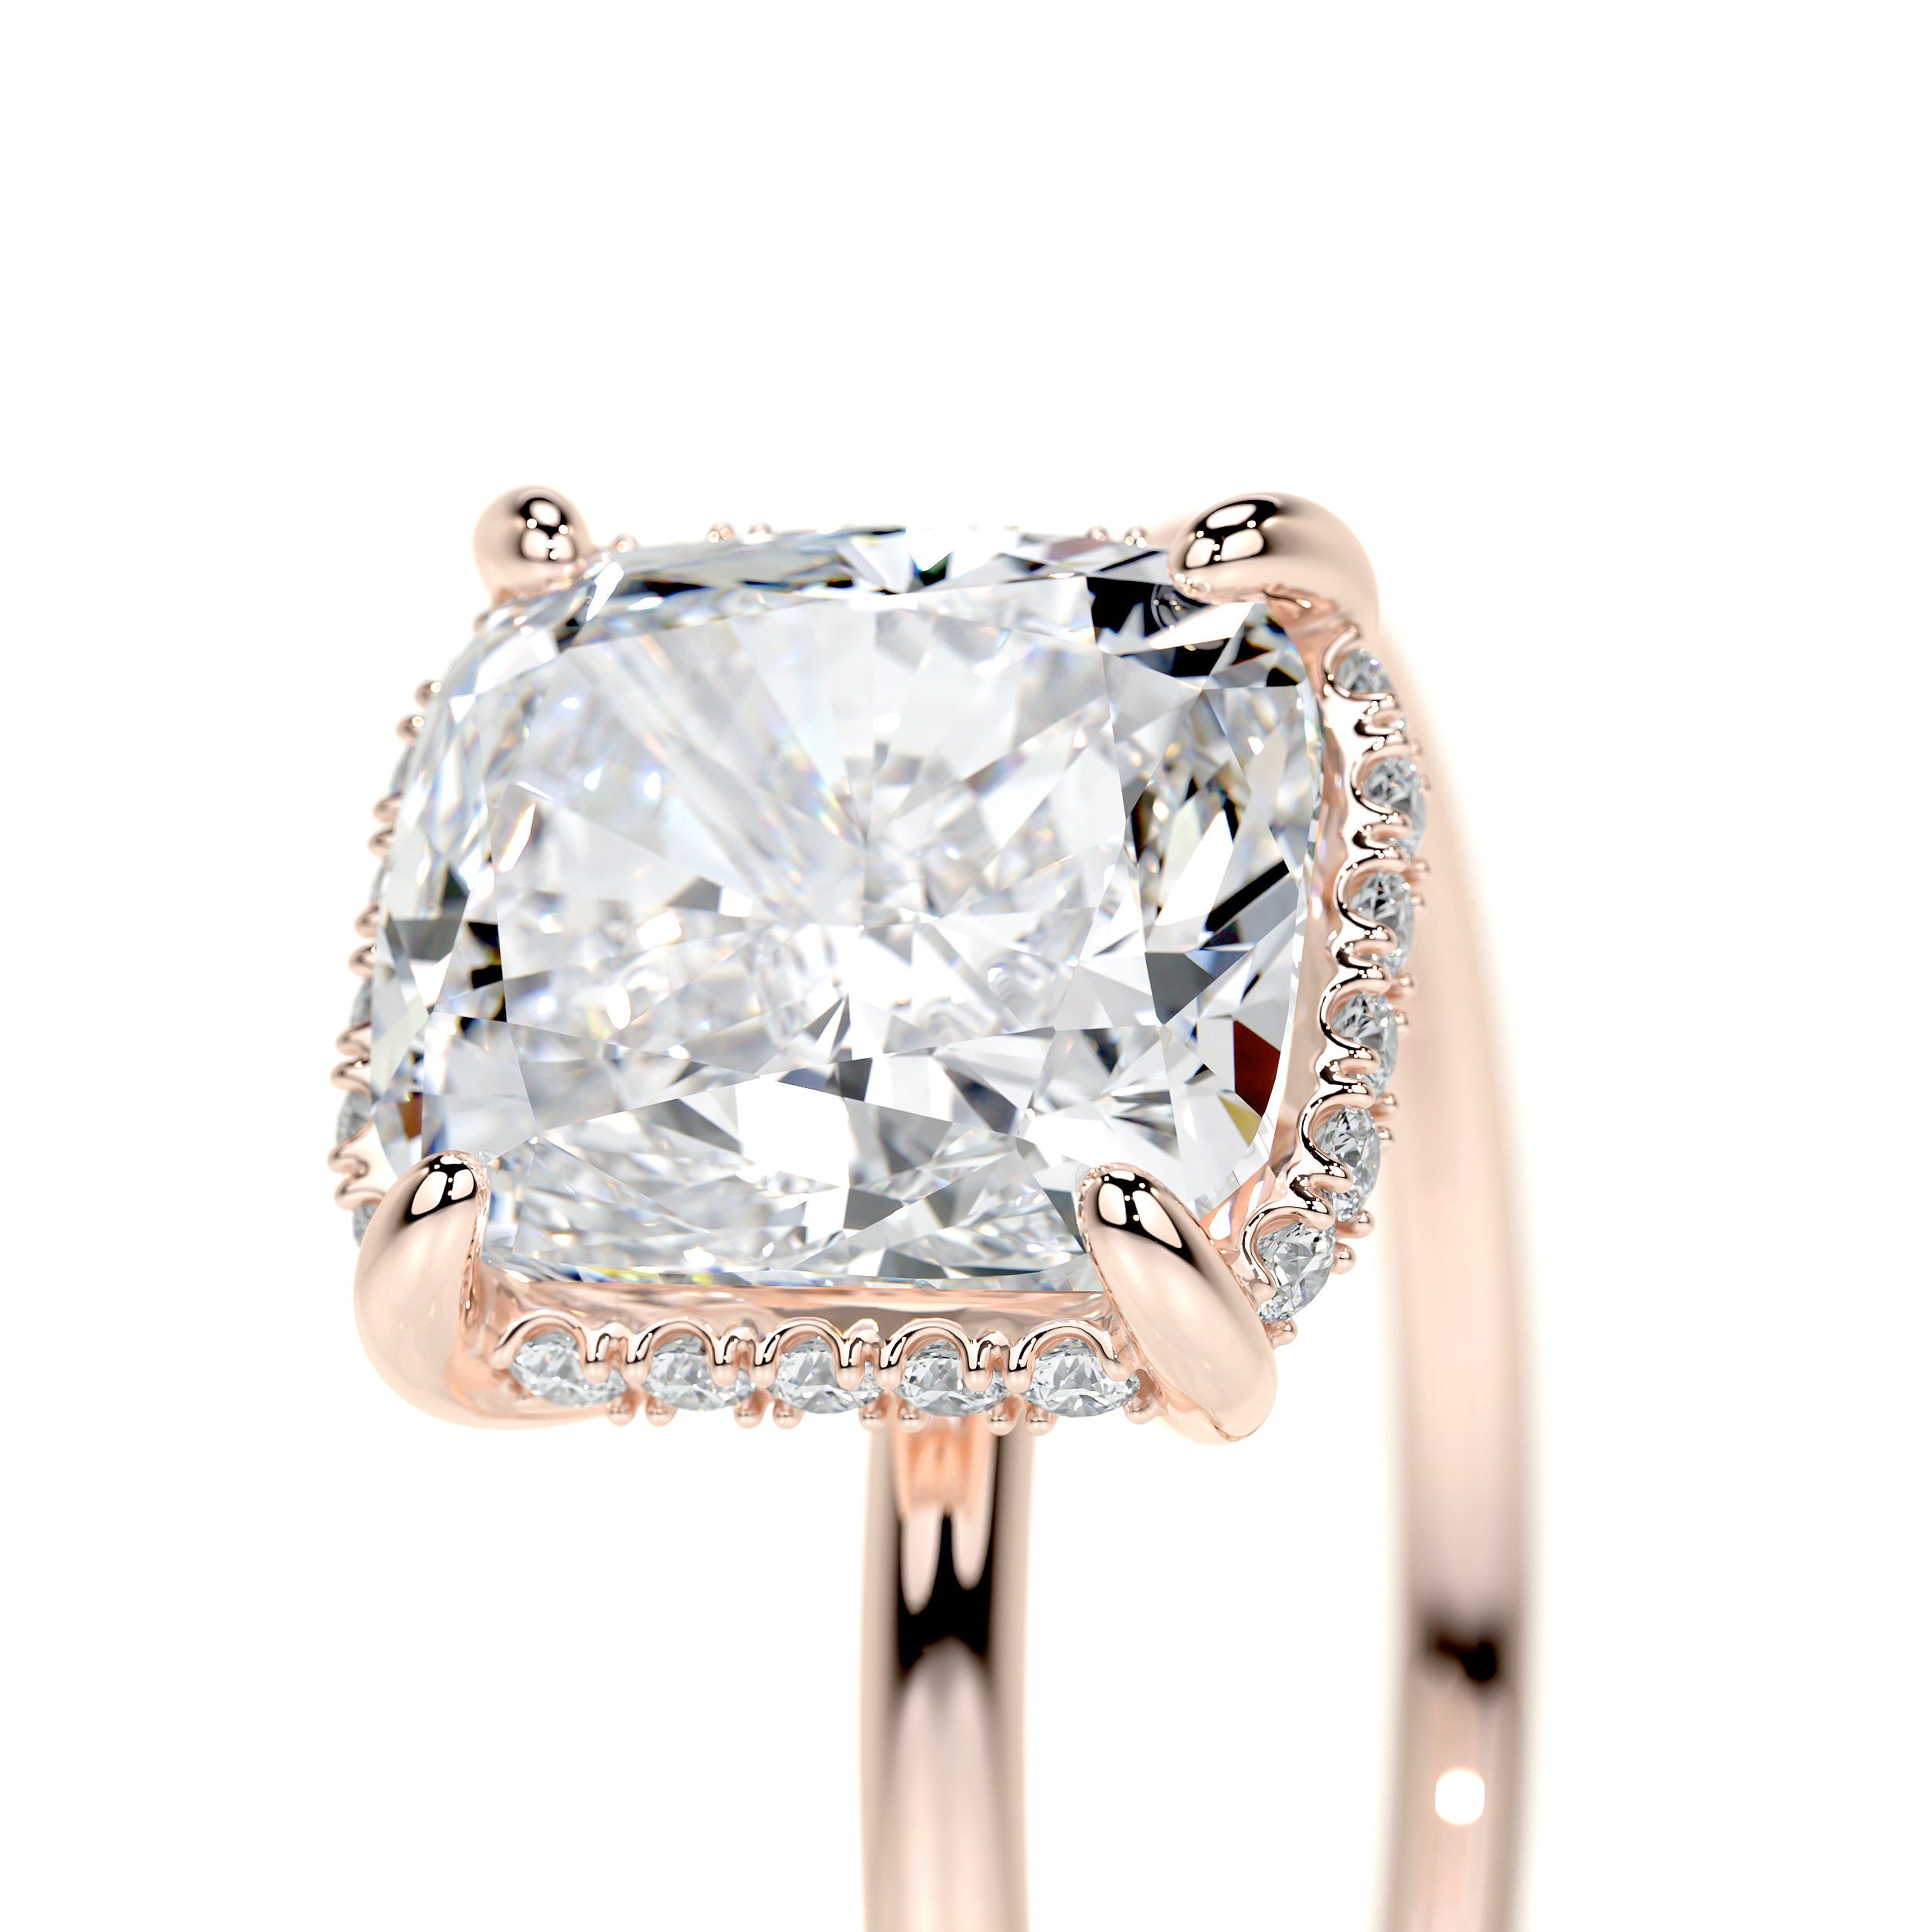 Priscilla Lab Grown Diamond Ring   (3.1 Carat) -14K Rose Gold